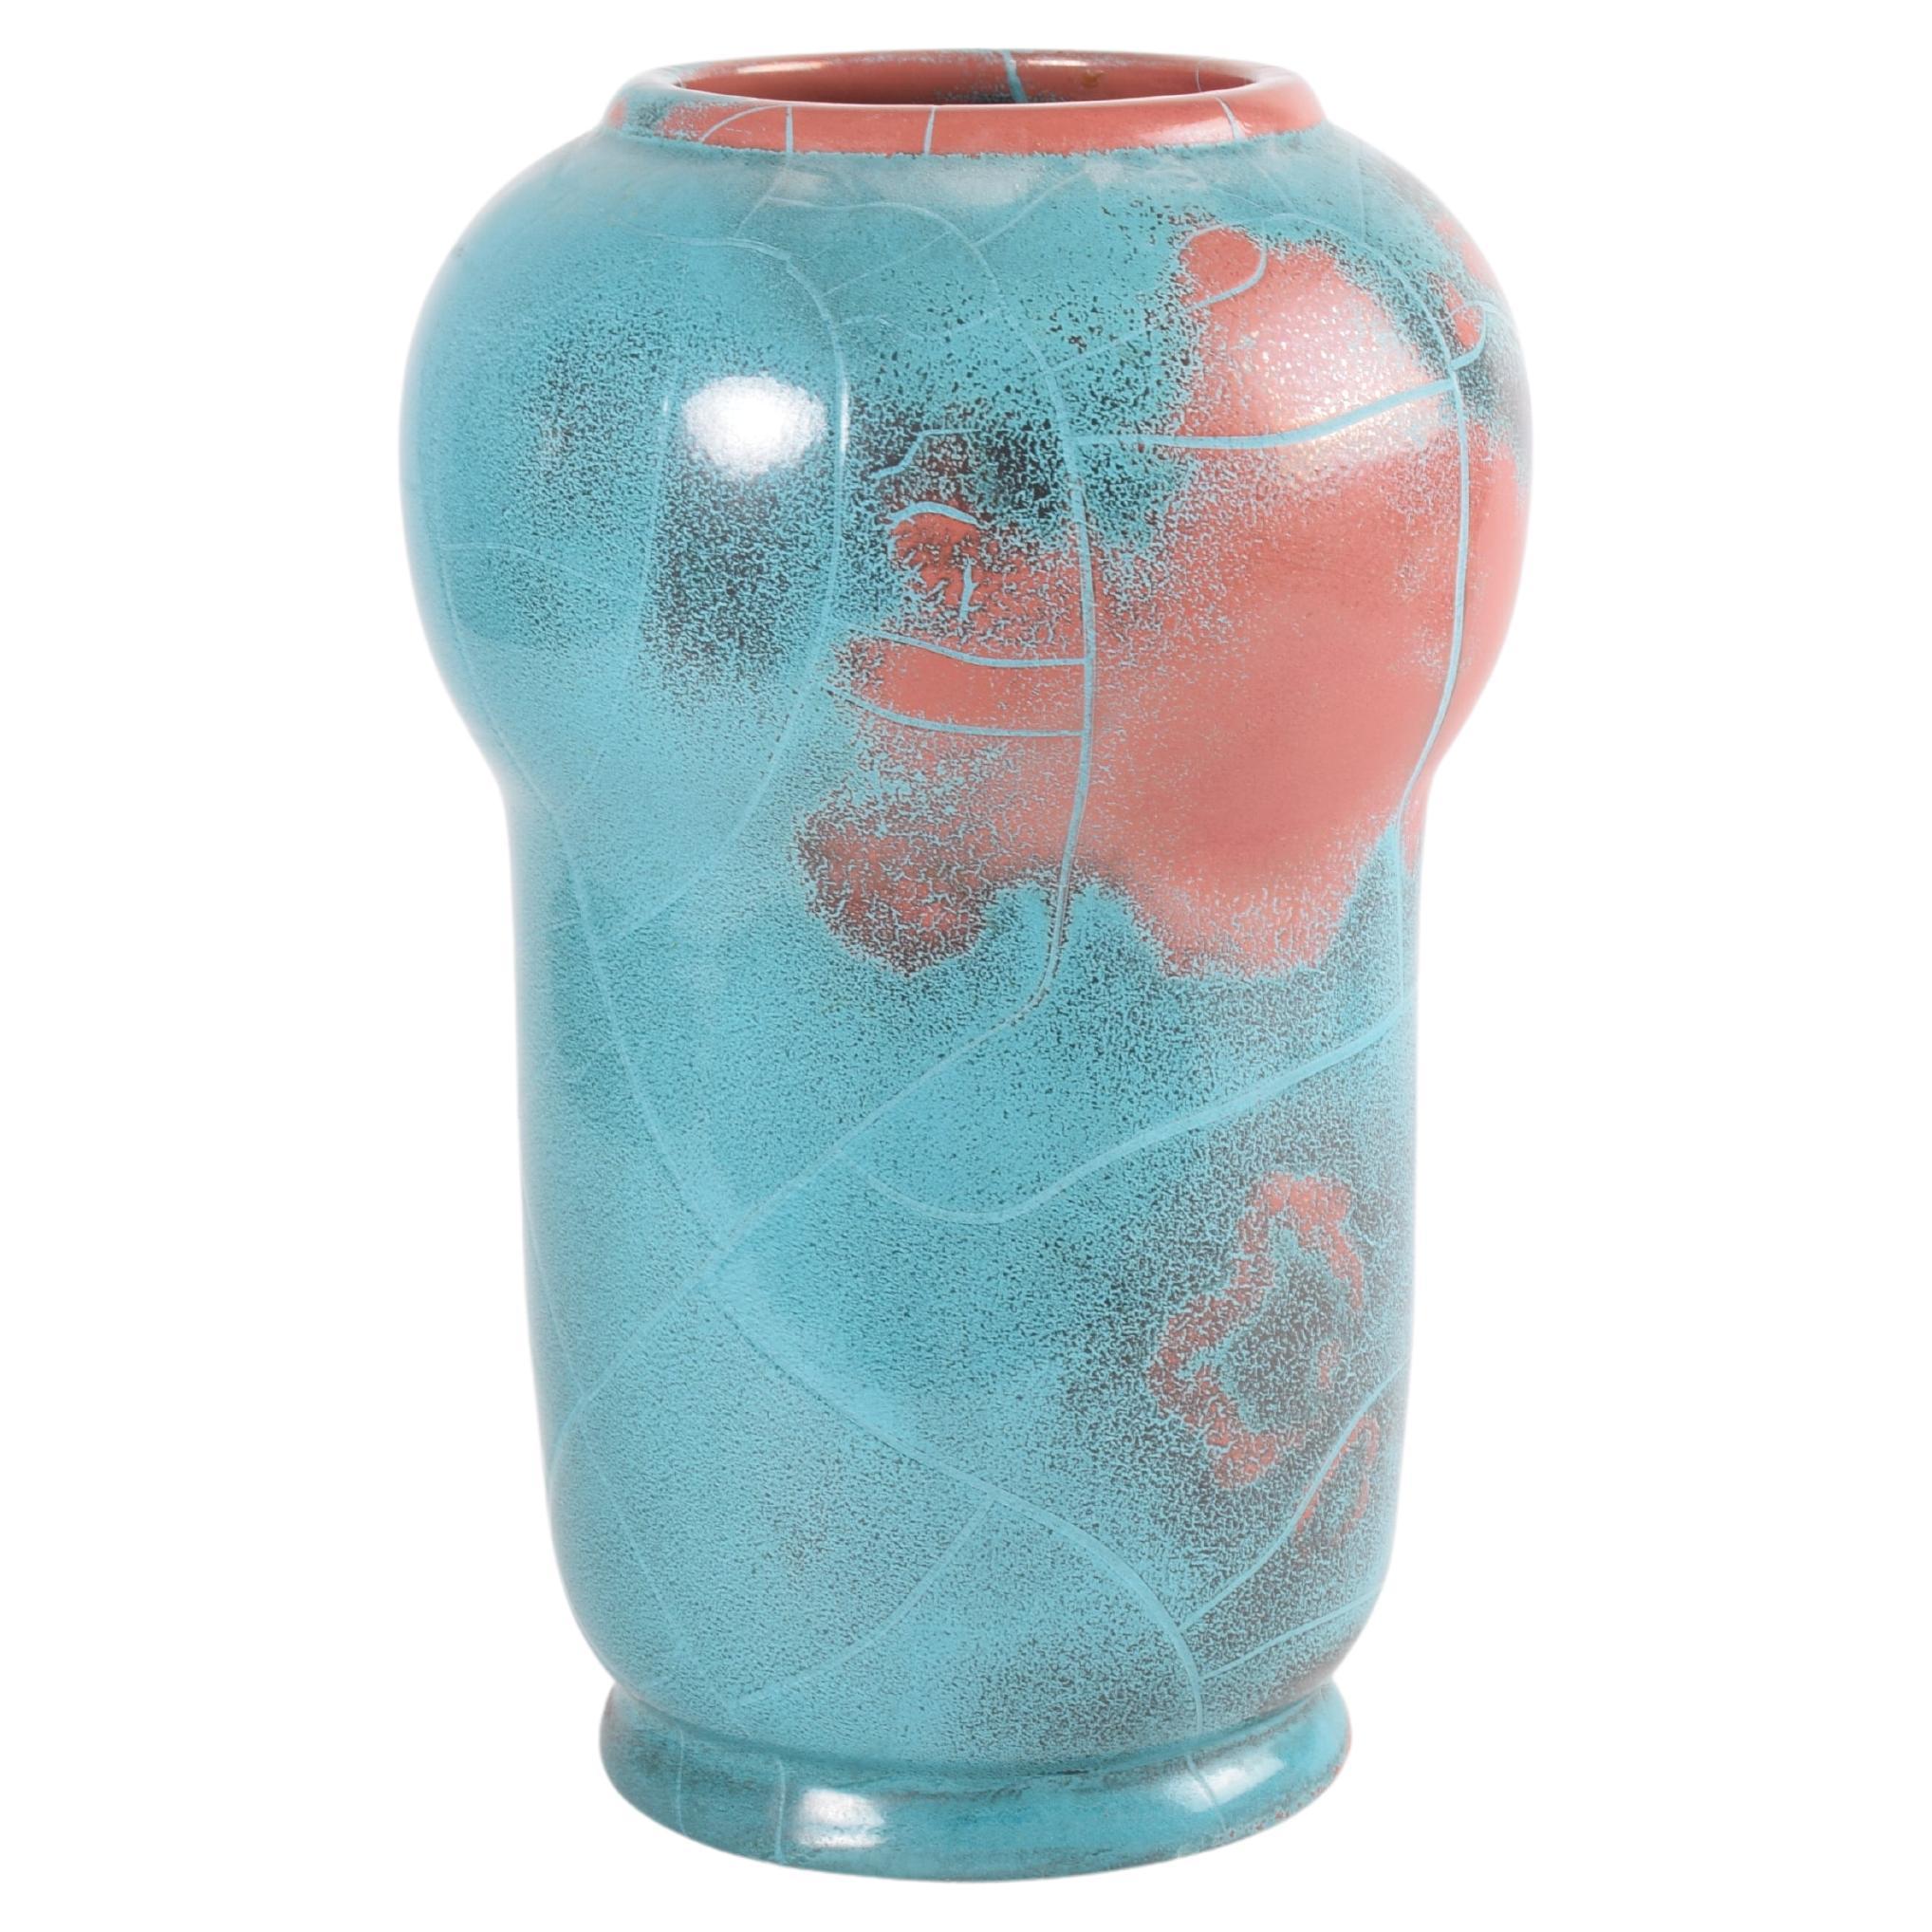 Rare grand vase danois P. Ipsens Enke glaçure rouge turquoise "Danit", céramique années 1930 en vente